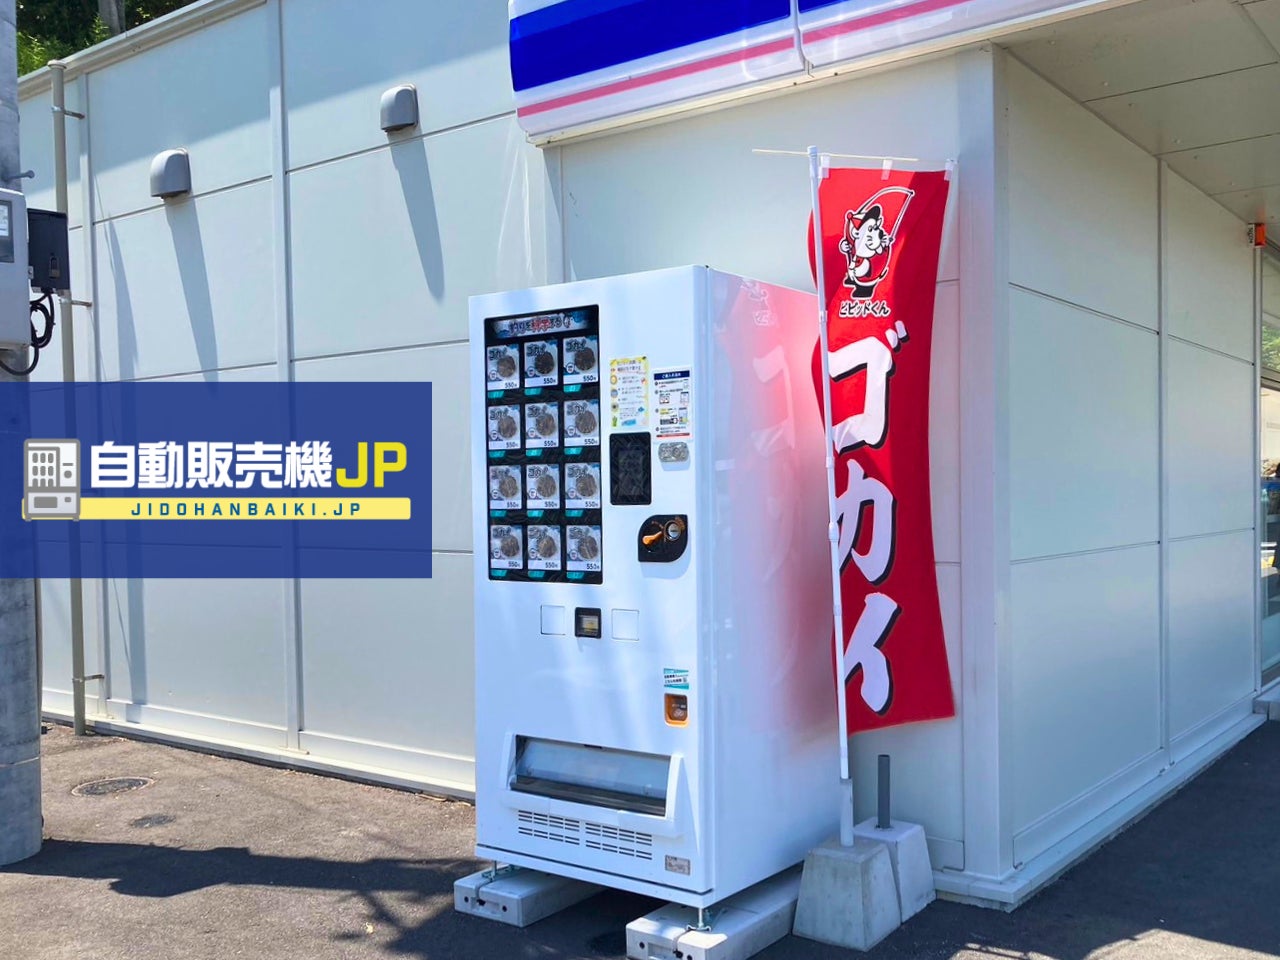 鹿児島県鹿児島市に”釣り餌自動販売機”が登場！自販機のことなら「自動販売機JP」